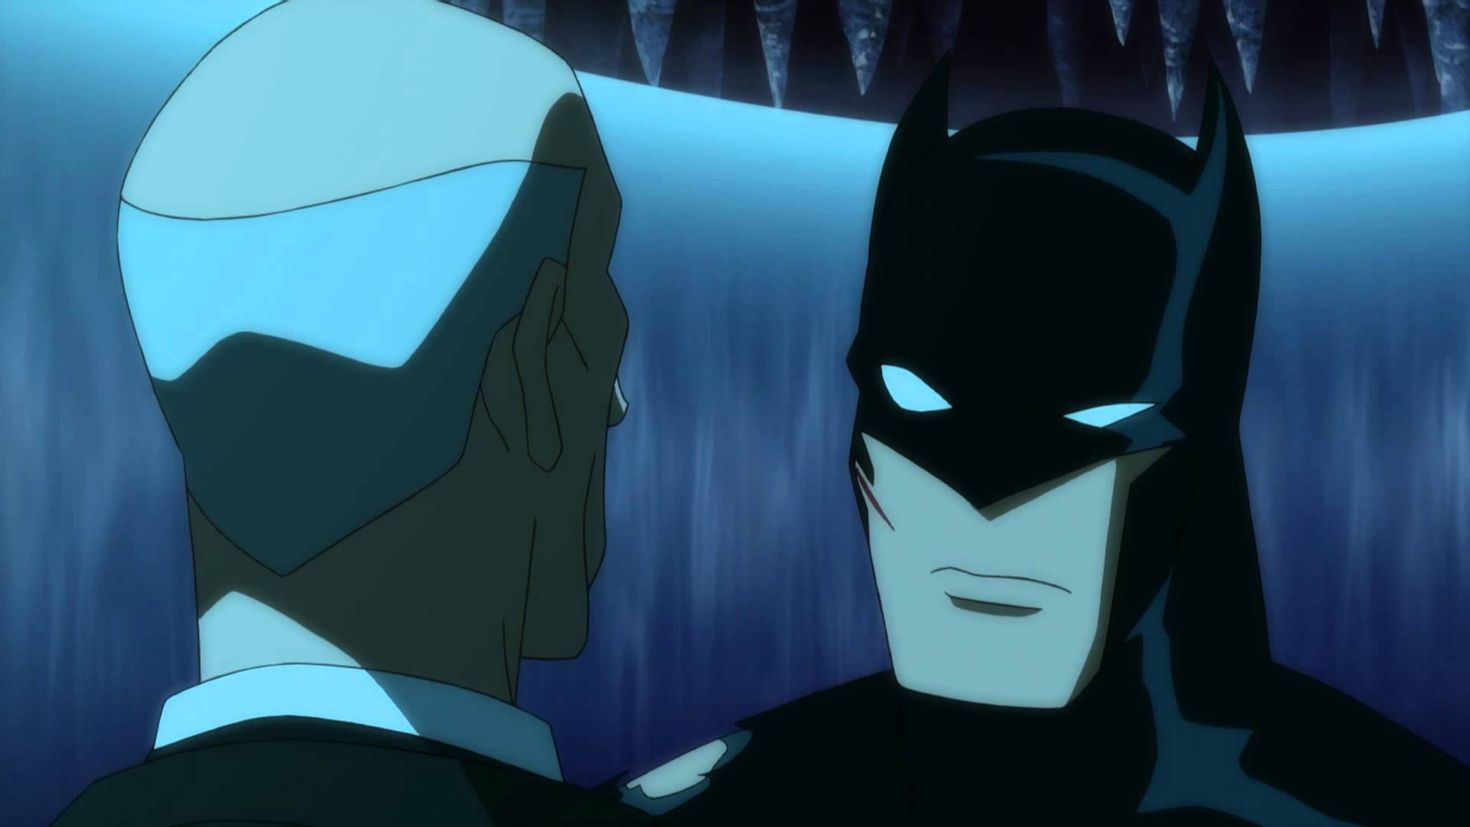 Batman justice league. Justice League Бэтмен будущего. Лига справедливости гибель Брюс Уэйн. Бэтмен 2004 лига справедливости.